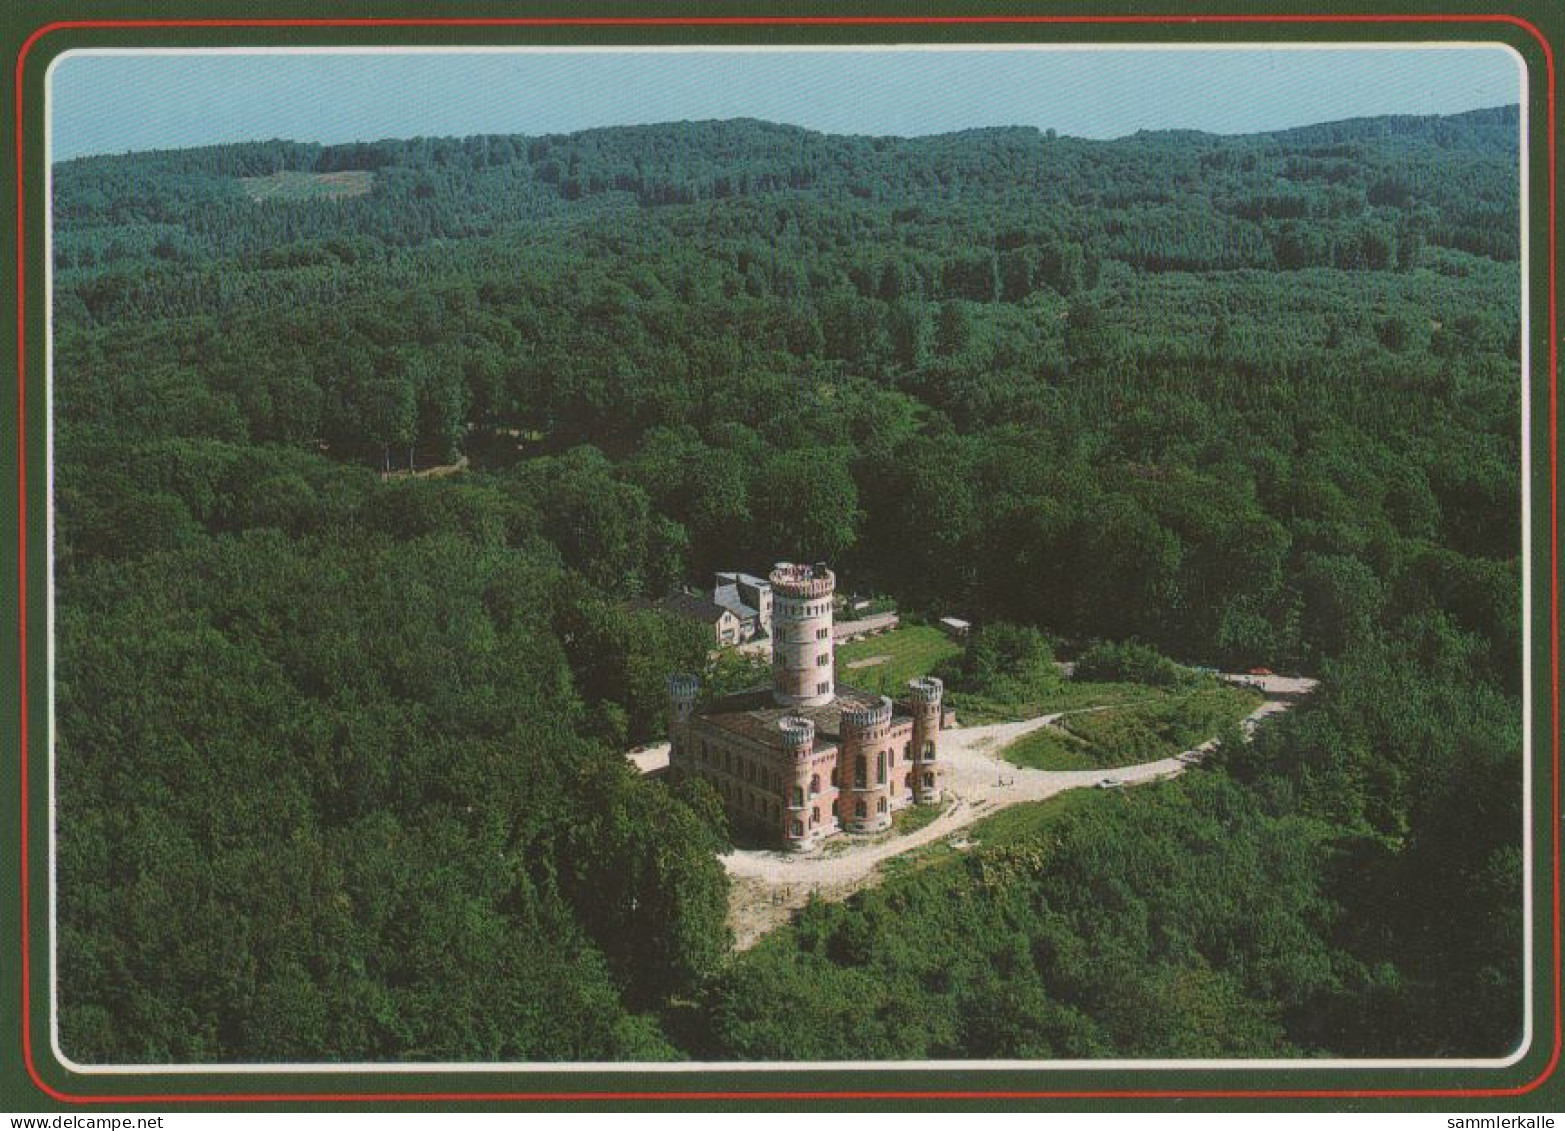 27057 - Rügen - Jagdschloss Granitz - 1993 - Rügen